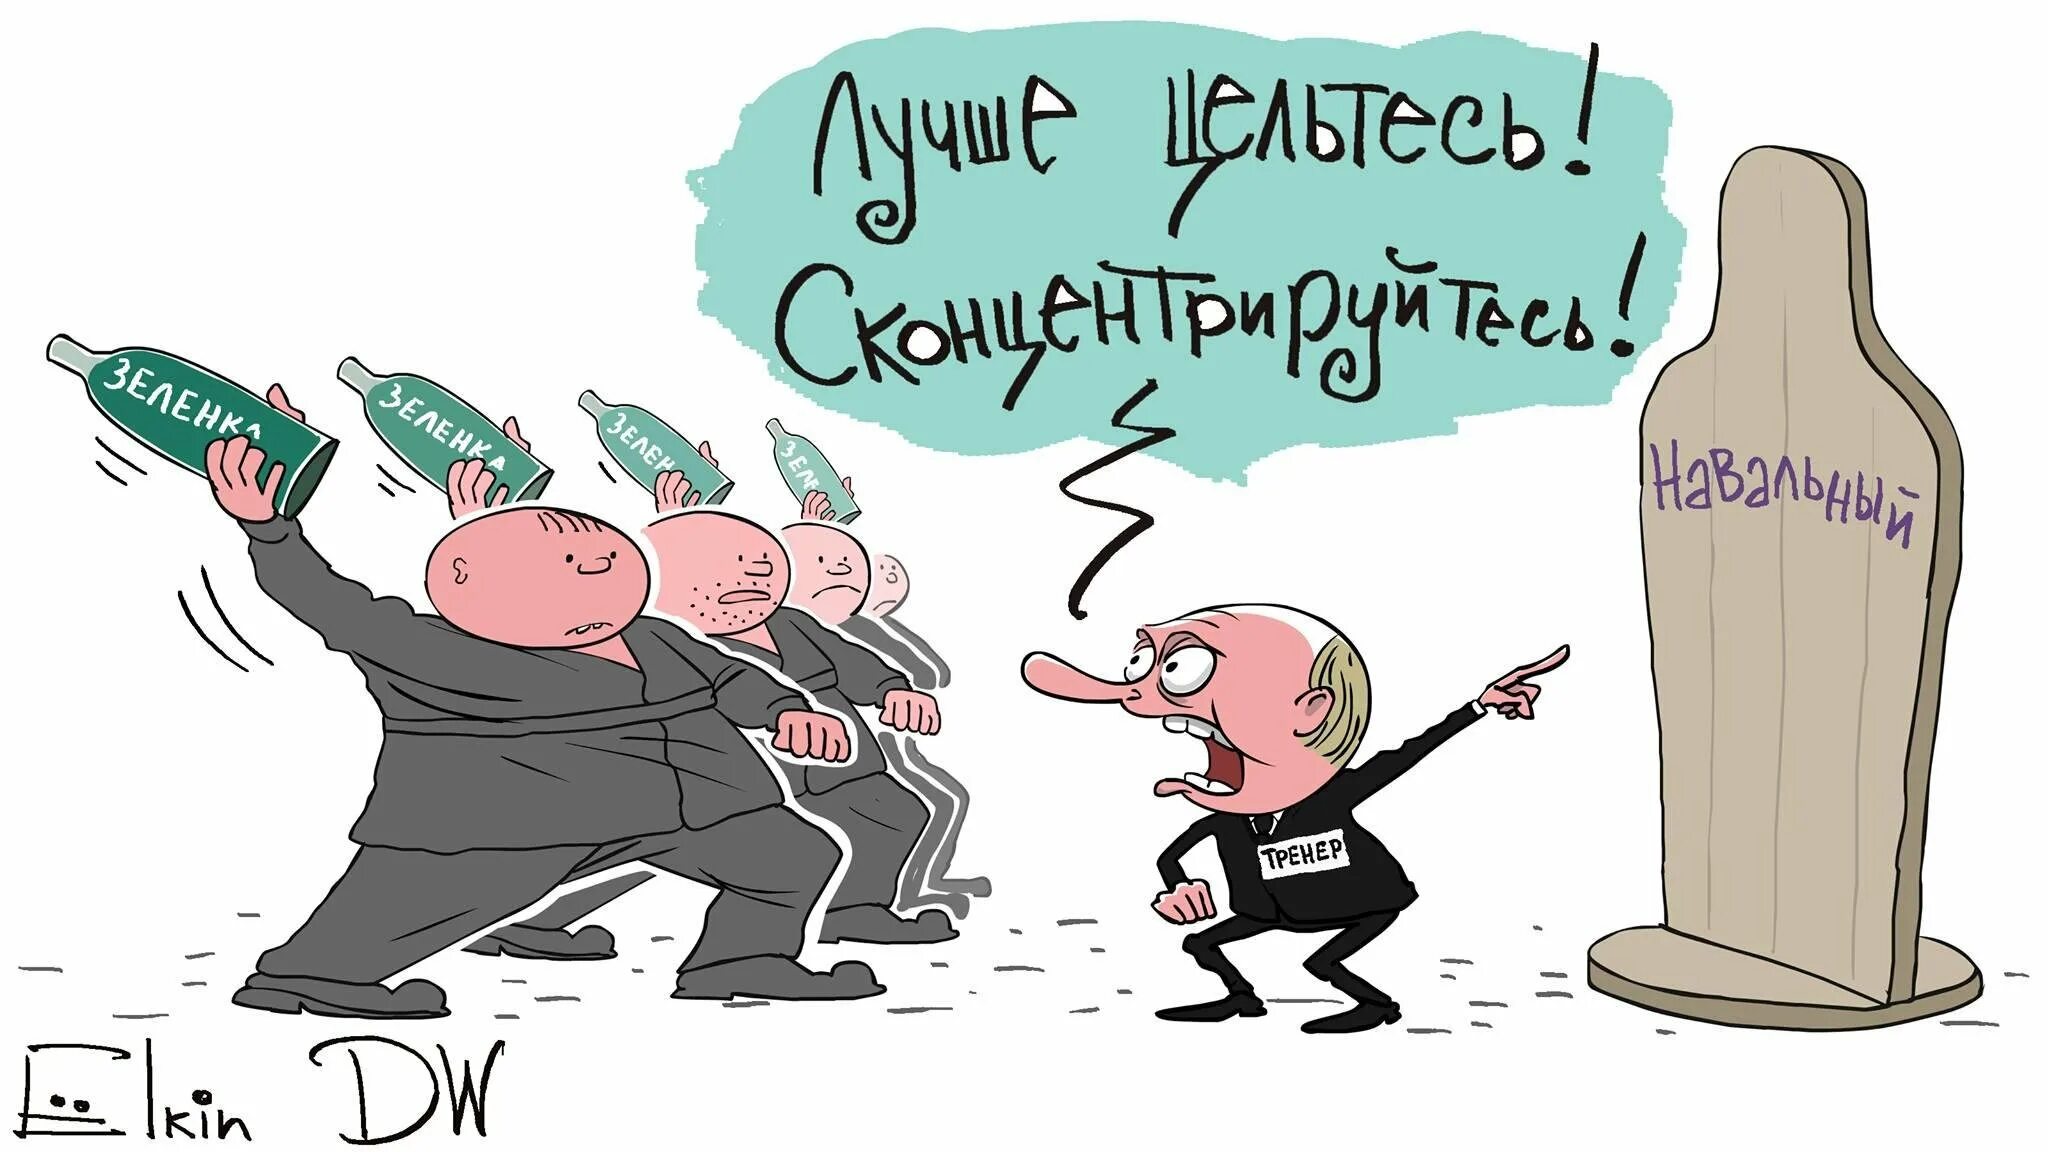 Ёлкин карикатуры Навальный. Политические карикатуры. Оппозиция карикатура. Политический приверженец